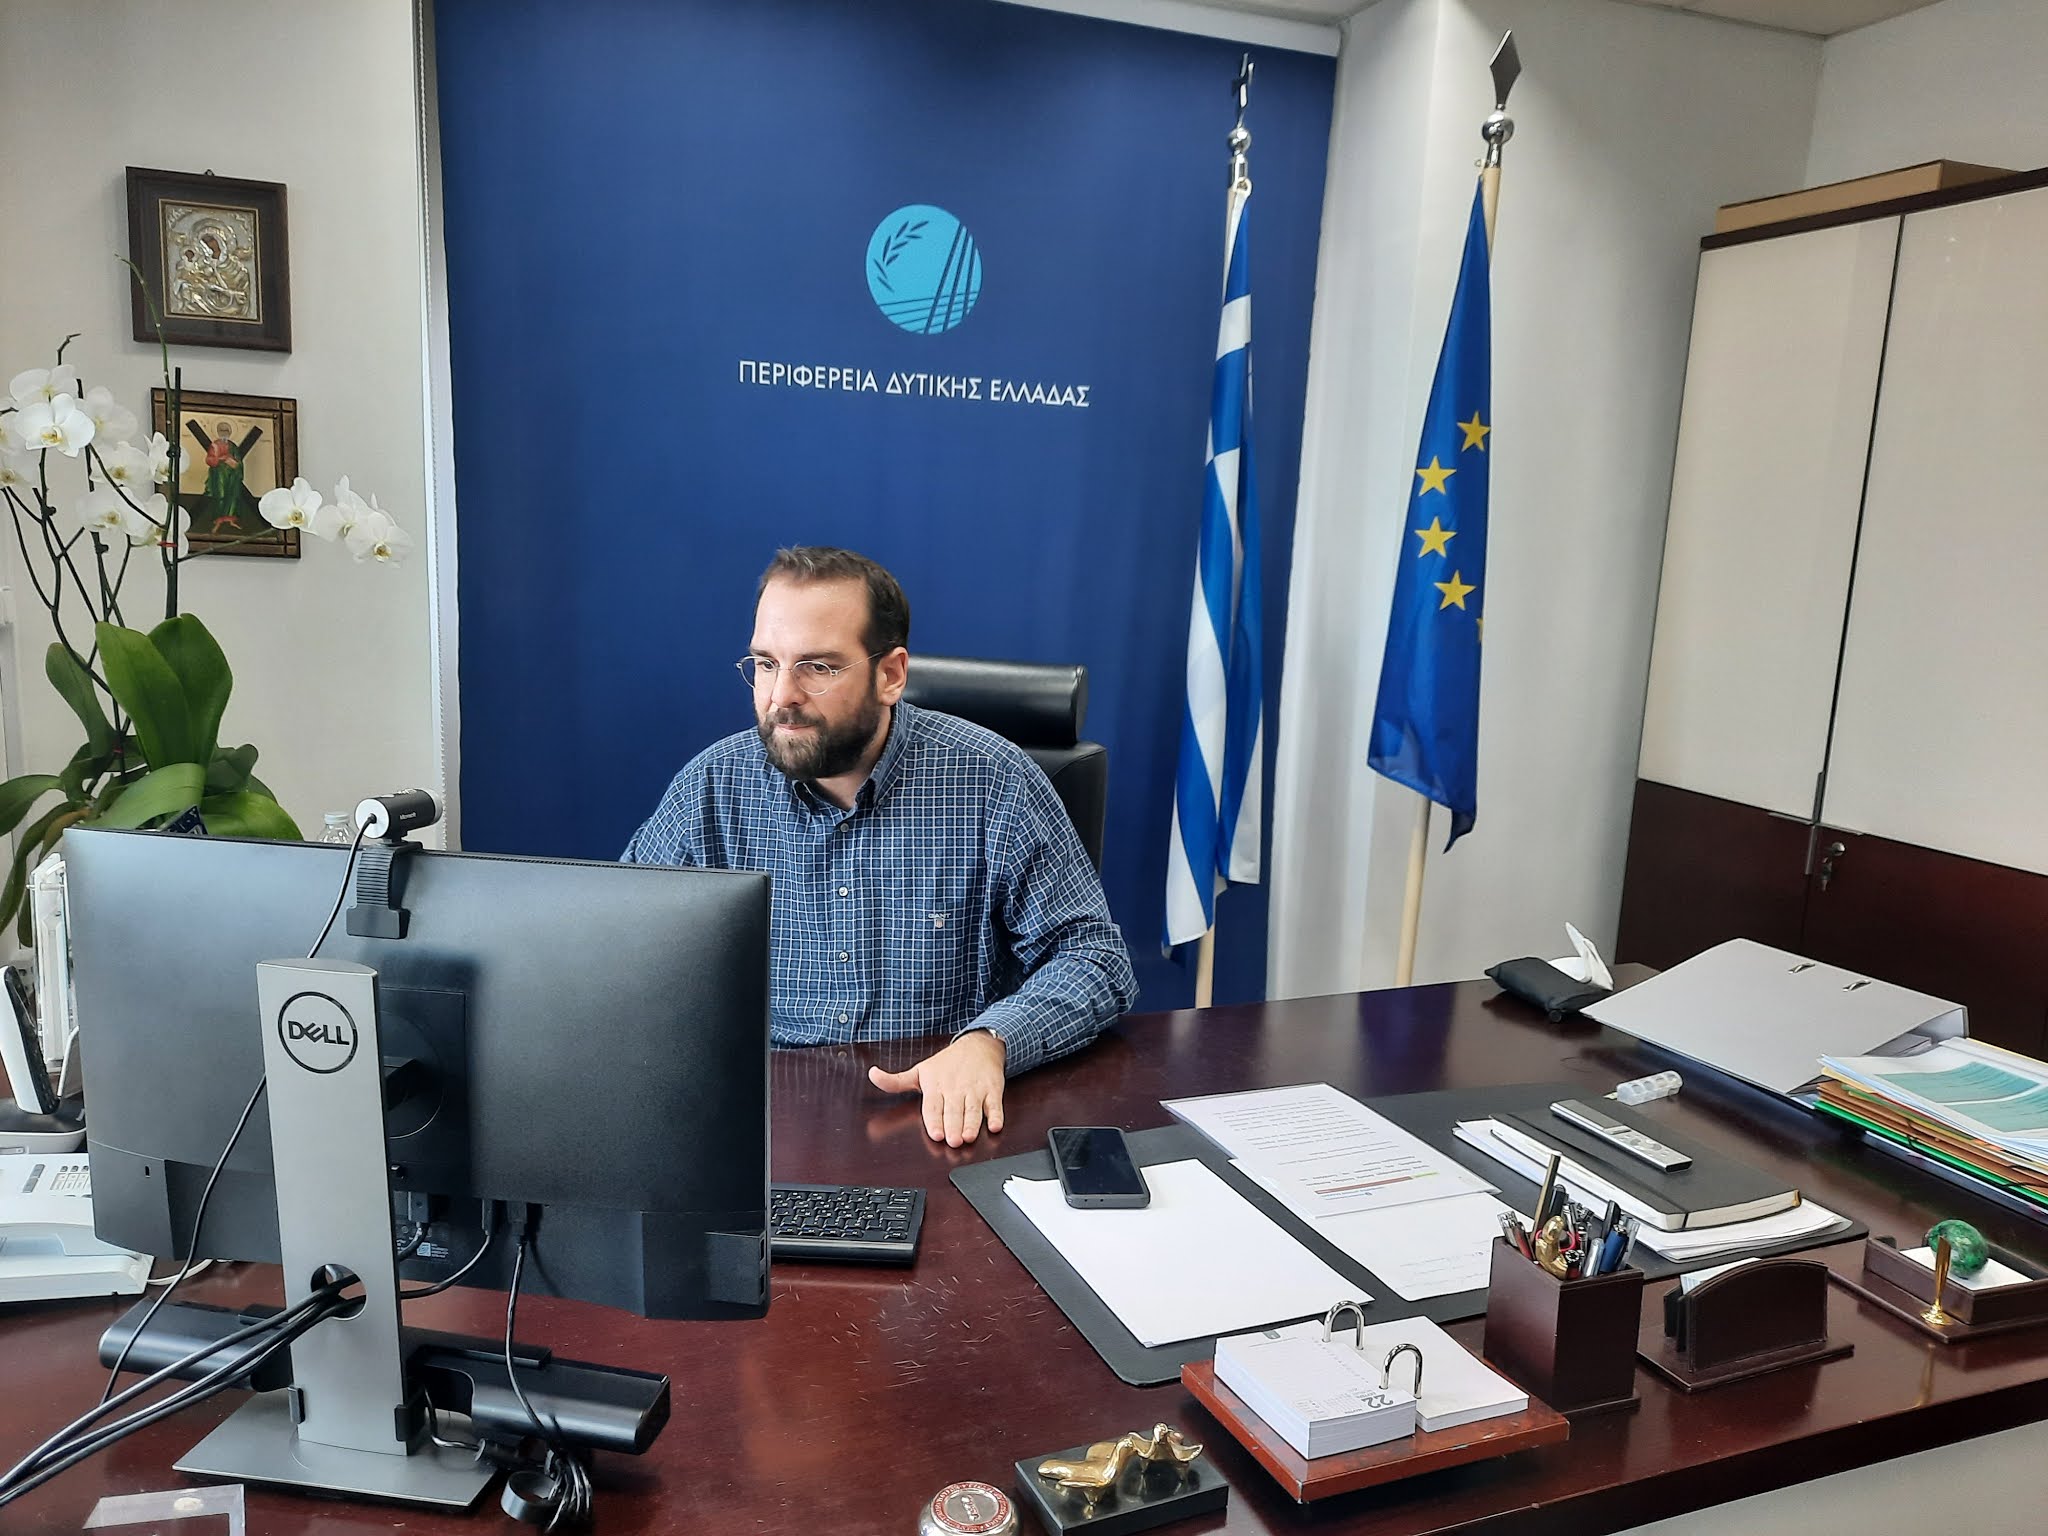  Ν. Φαρμάκης: «Όλοι μαζί μπορούμε να φτιάξουμε ένα Πανεπιστήμιο που θα αγκαλιάζει και τους 700.000 πολίτες της Δυτικής Ελλάδας»